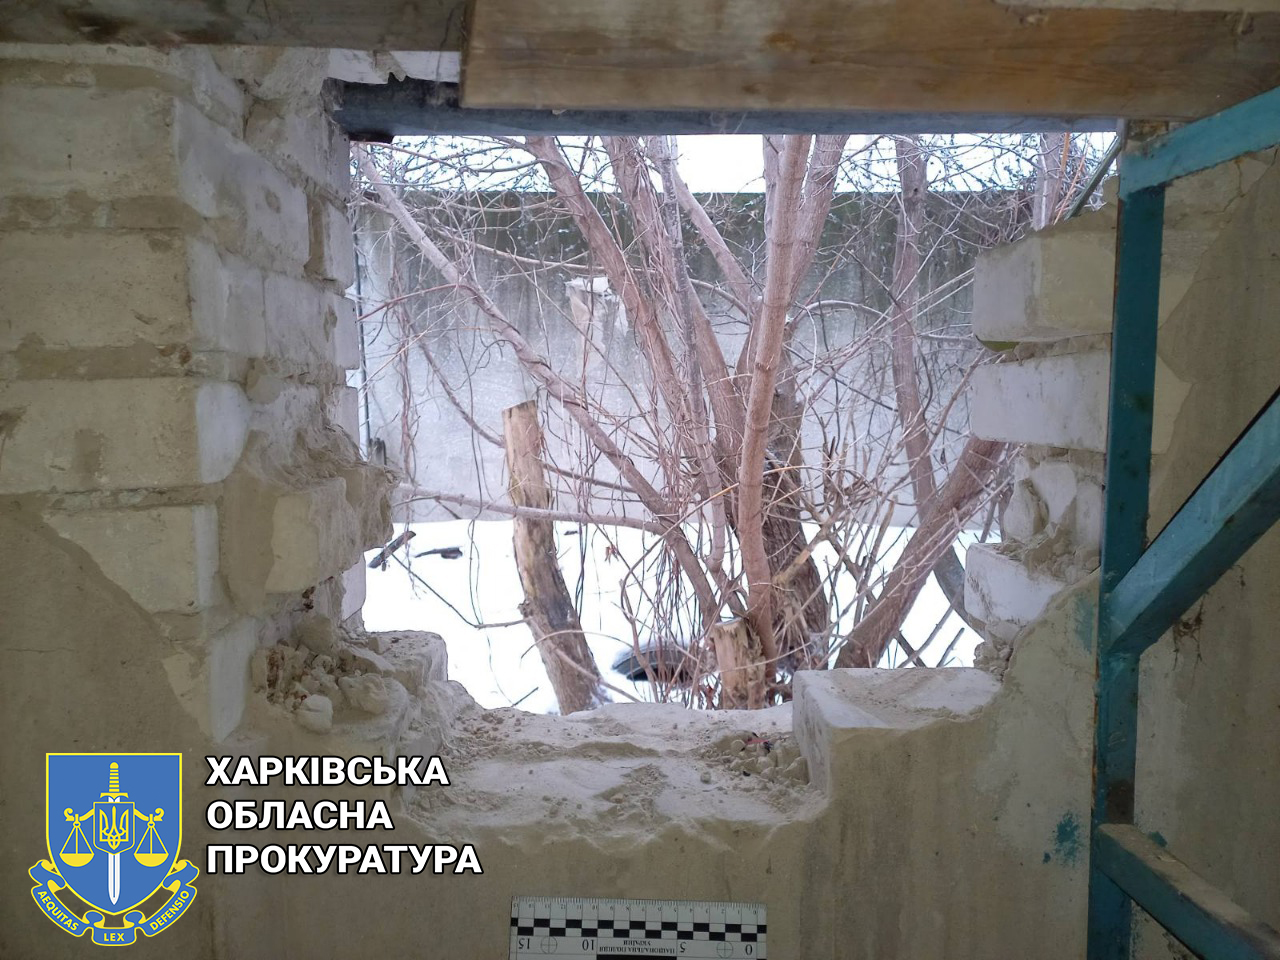 Криминал Харьков: Пойманы серийные воры, обокравшие гаражи на 280 000 гривен